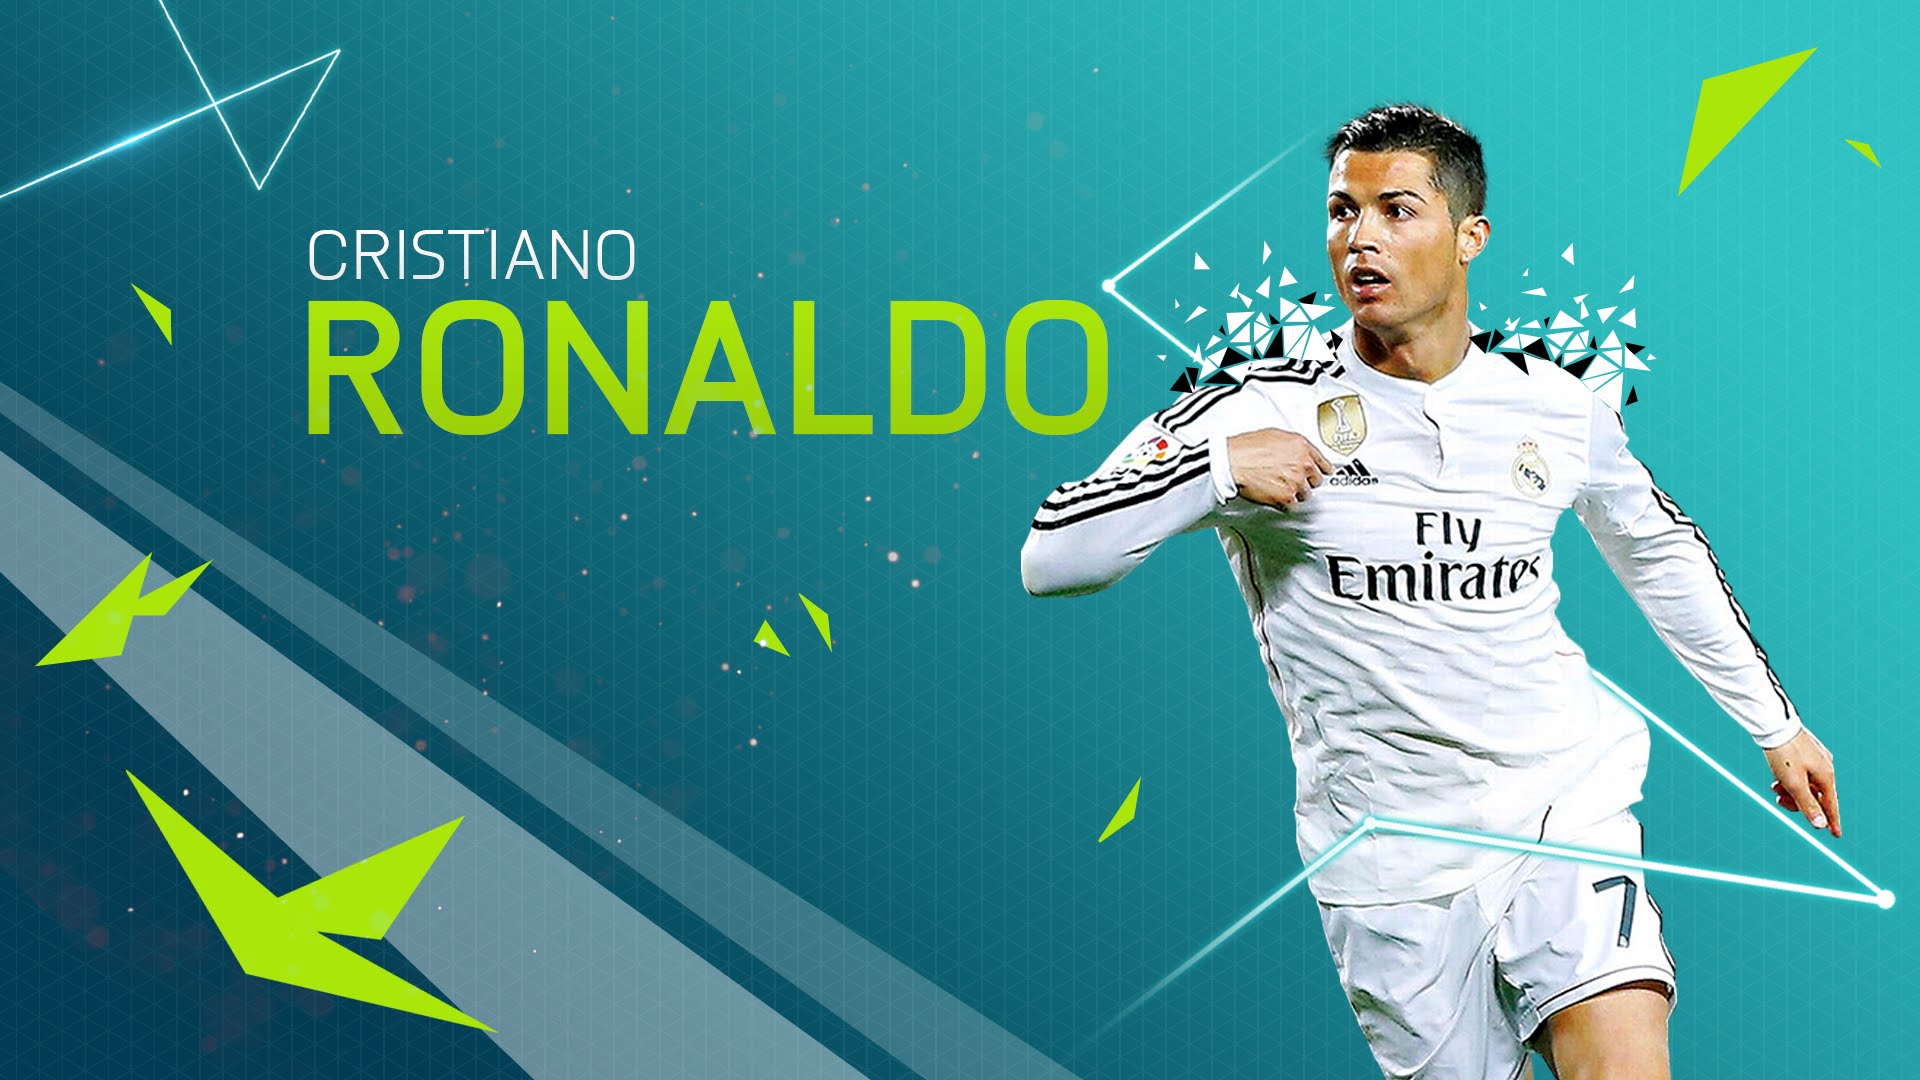 Fifa 19 Ps4 Wallpaper - Fifa 18 Cristiano Ronaldo - HD Wallpaper 